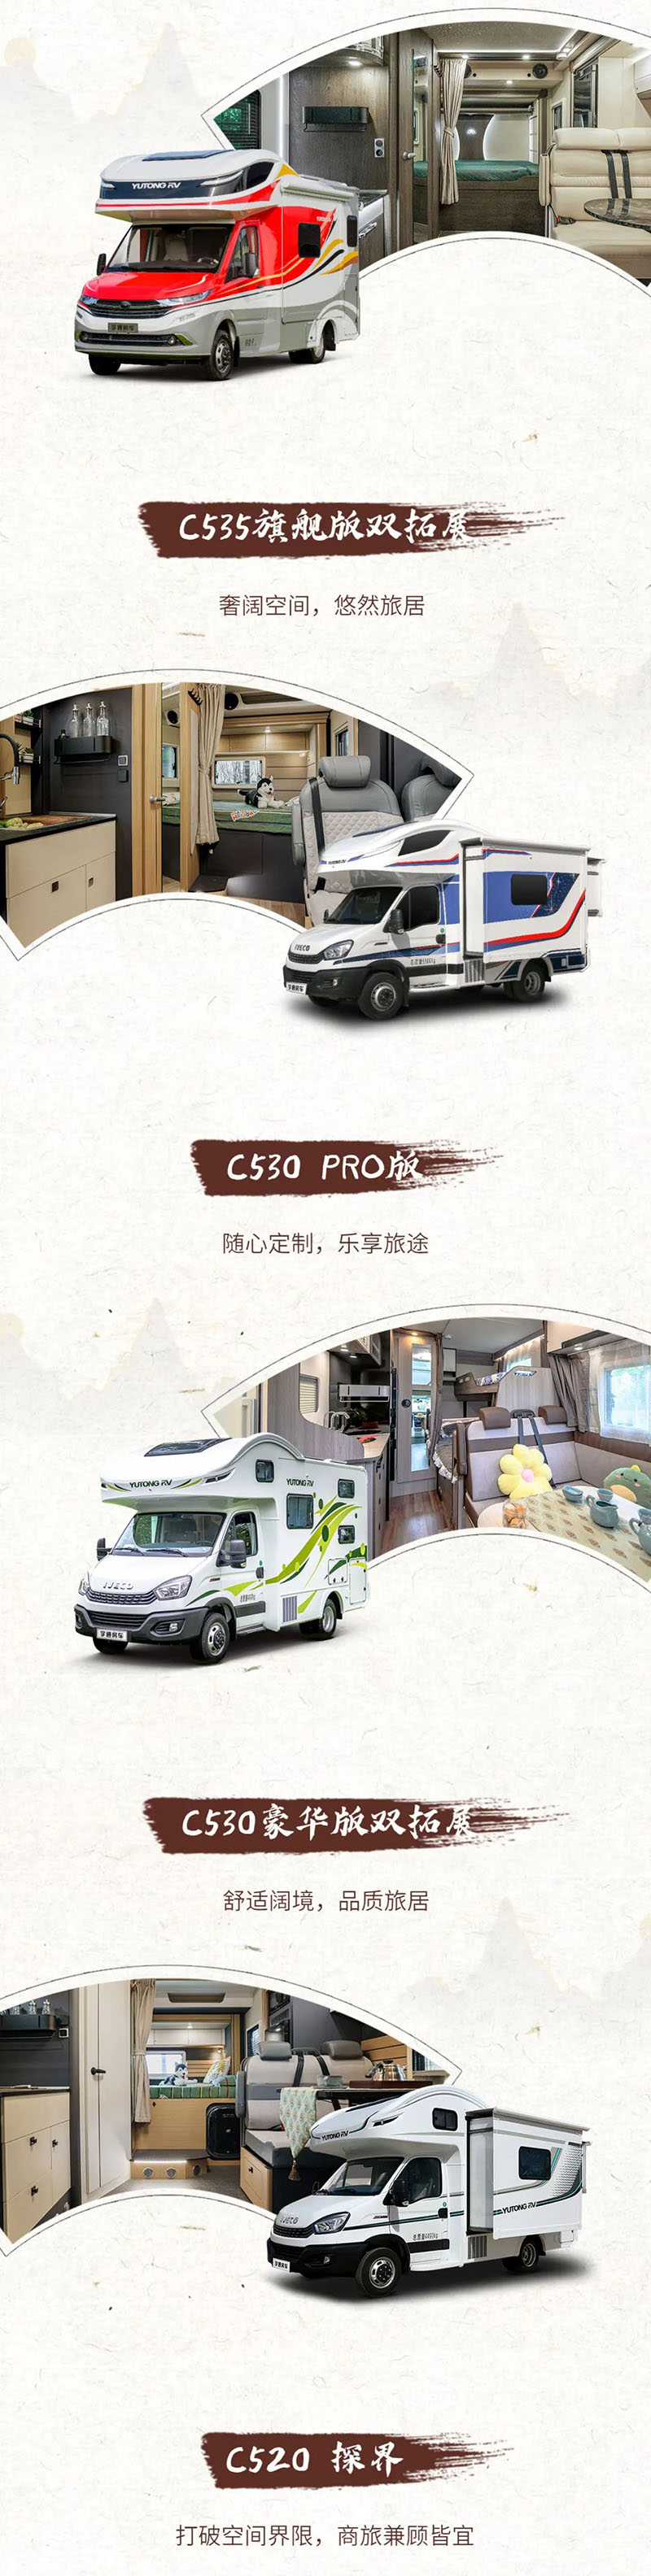 第五届杭州国际房车展览会开始啦——宇通房车即将到达